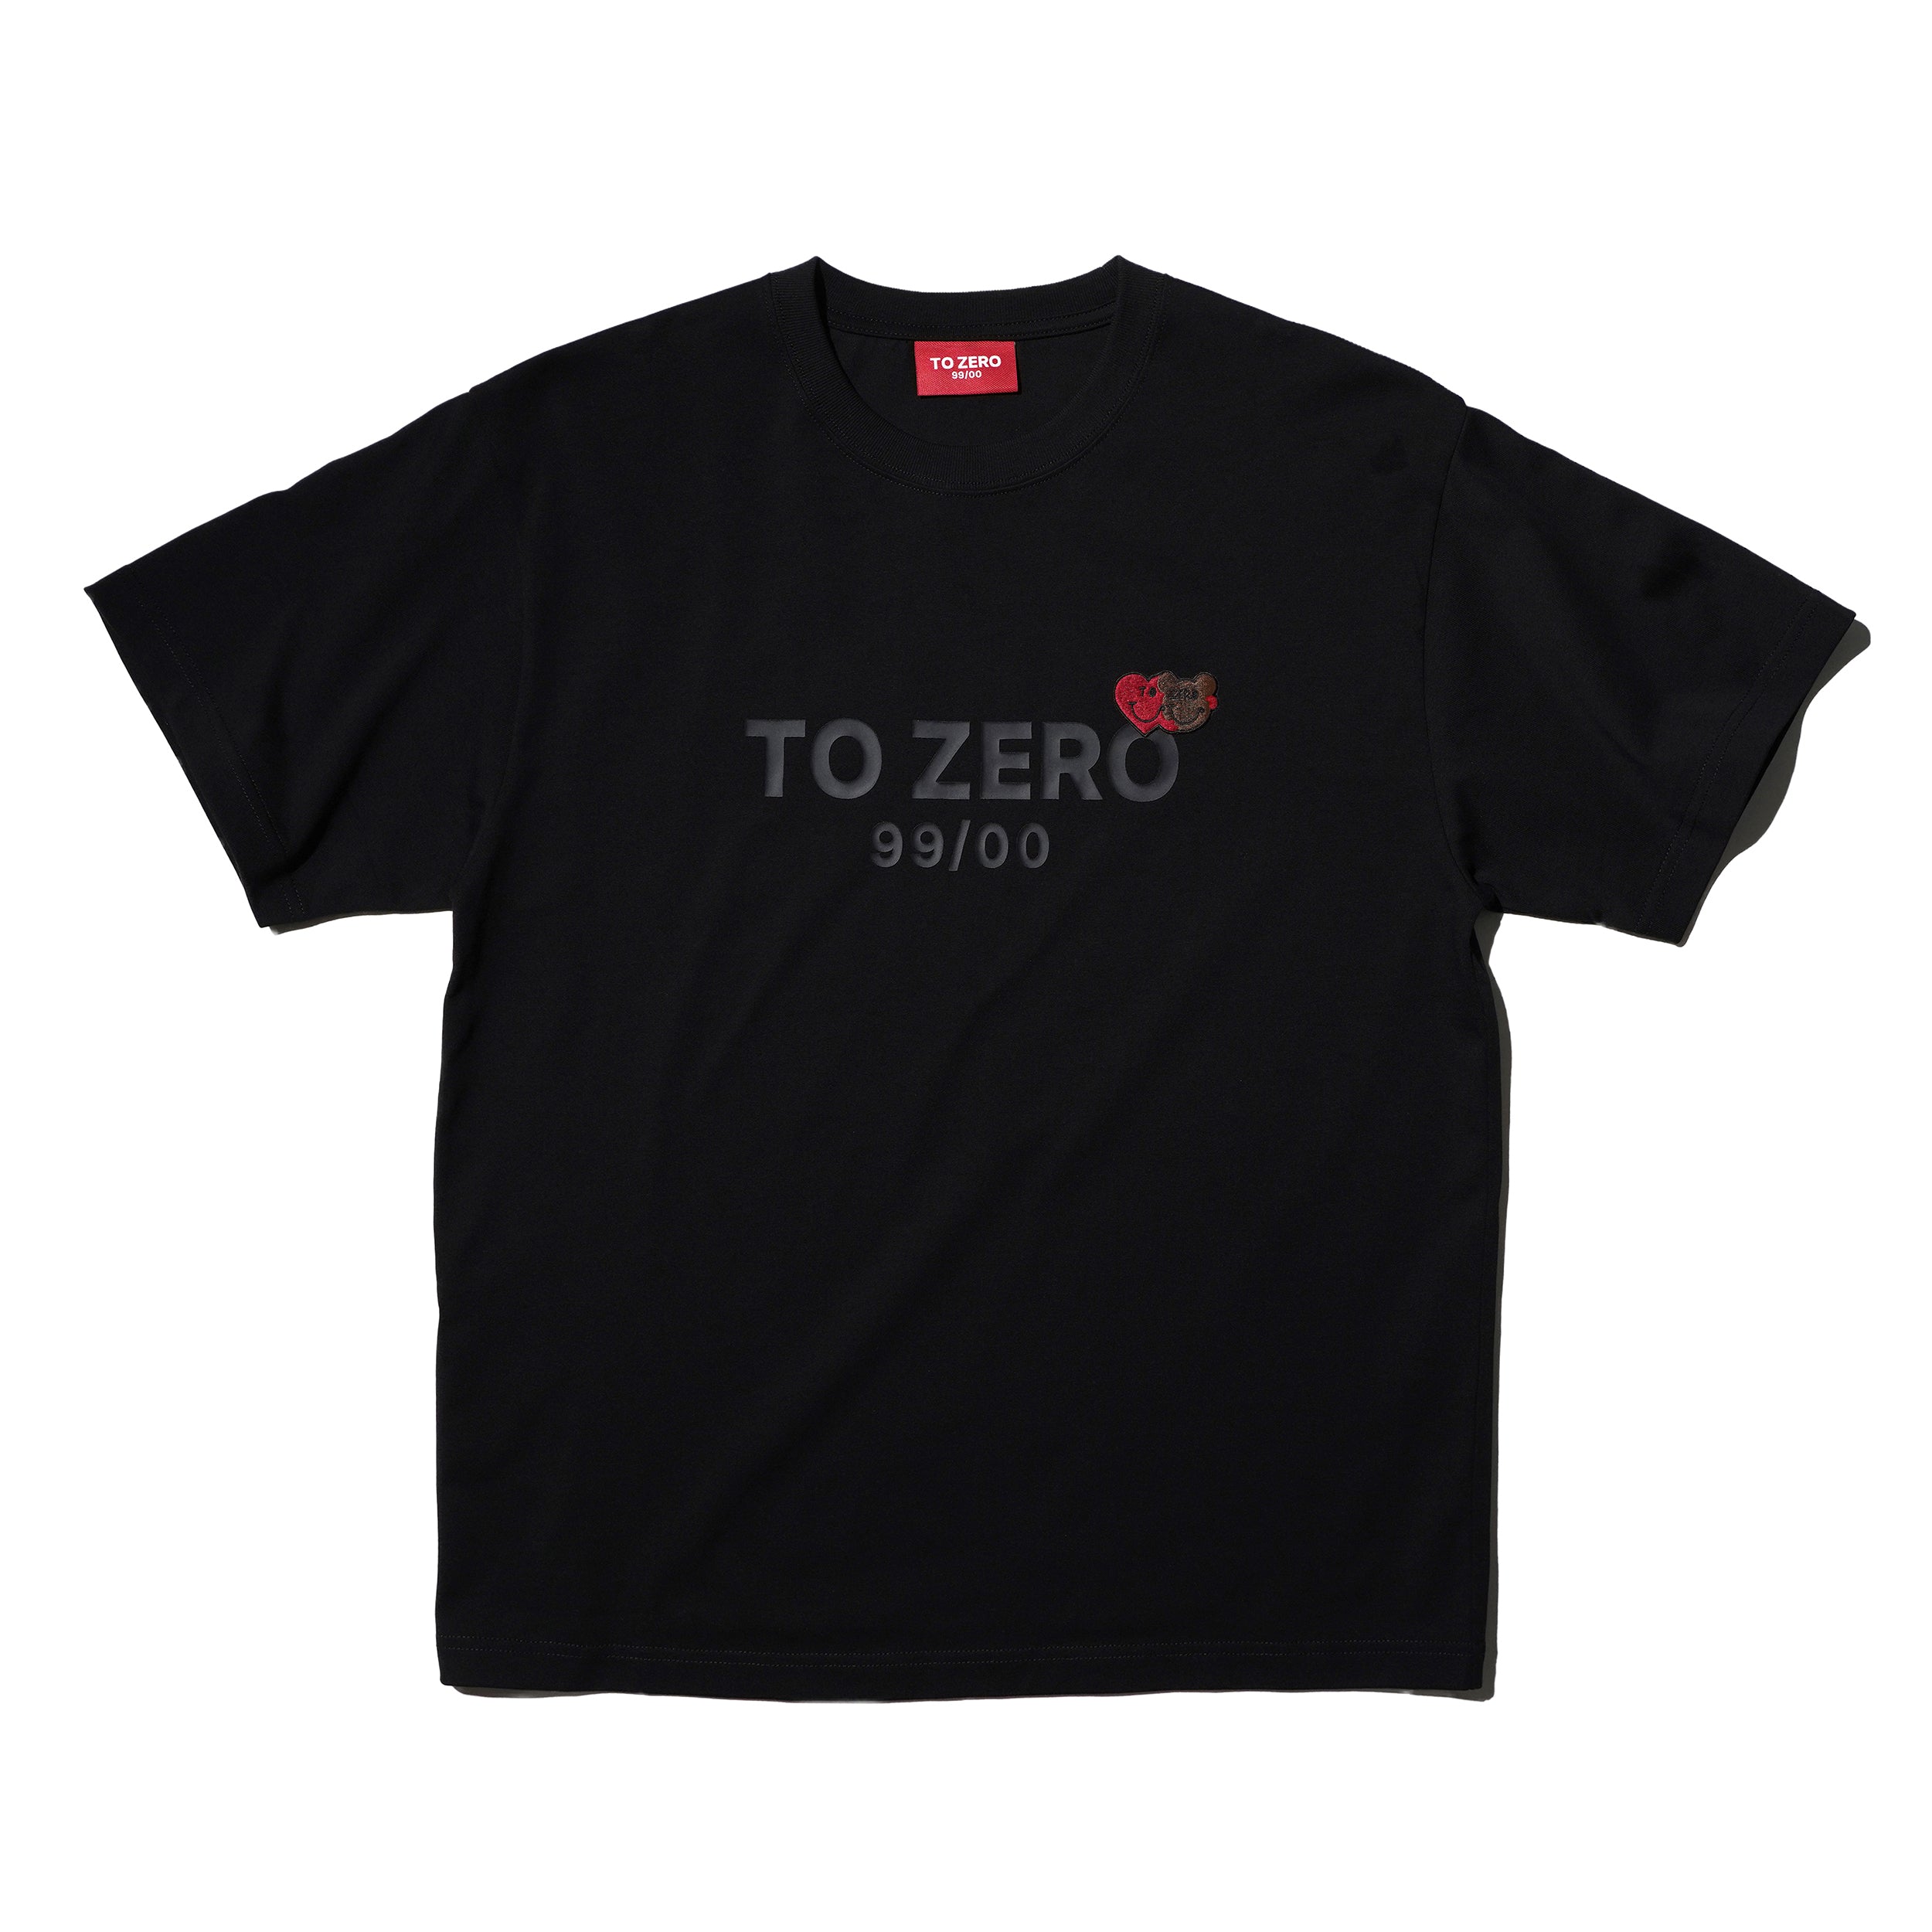 'TO ZERO #98' T-SHIRT